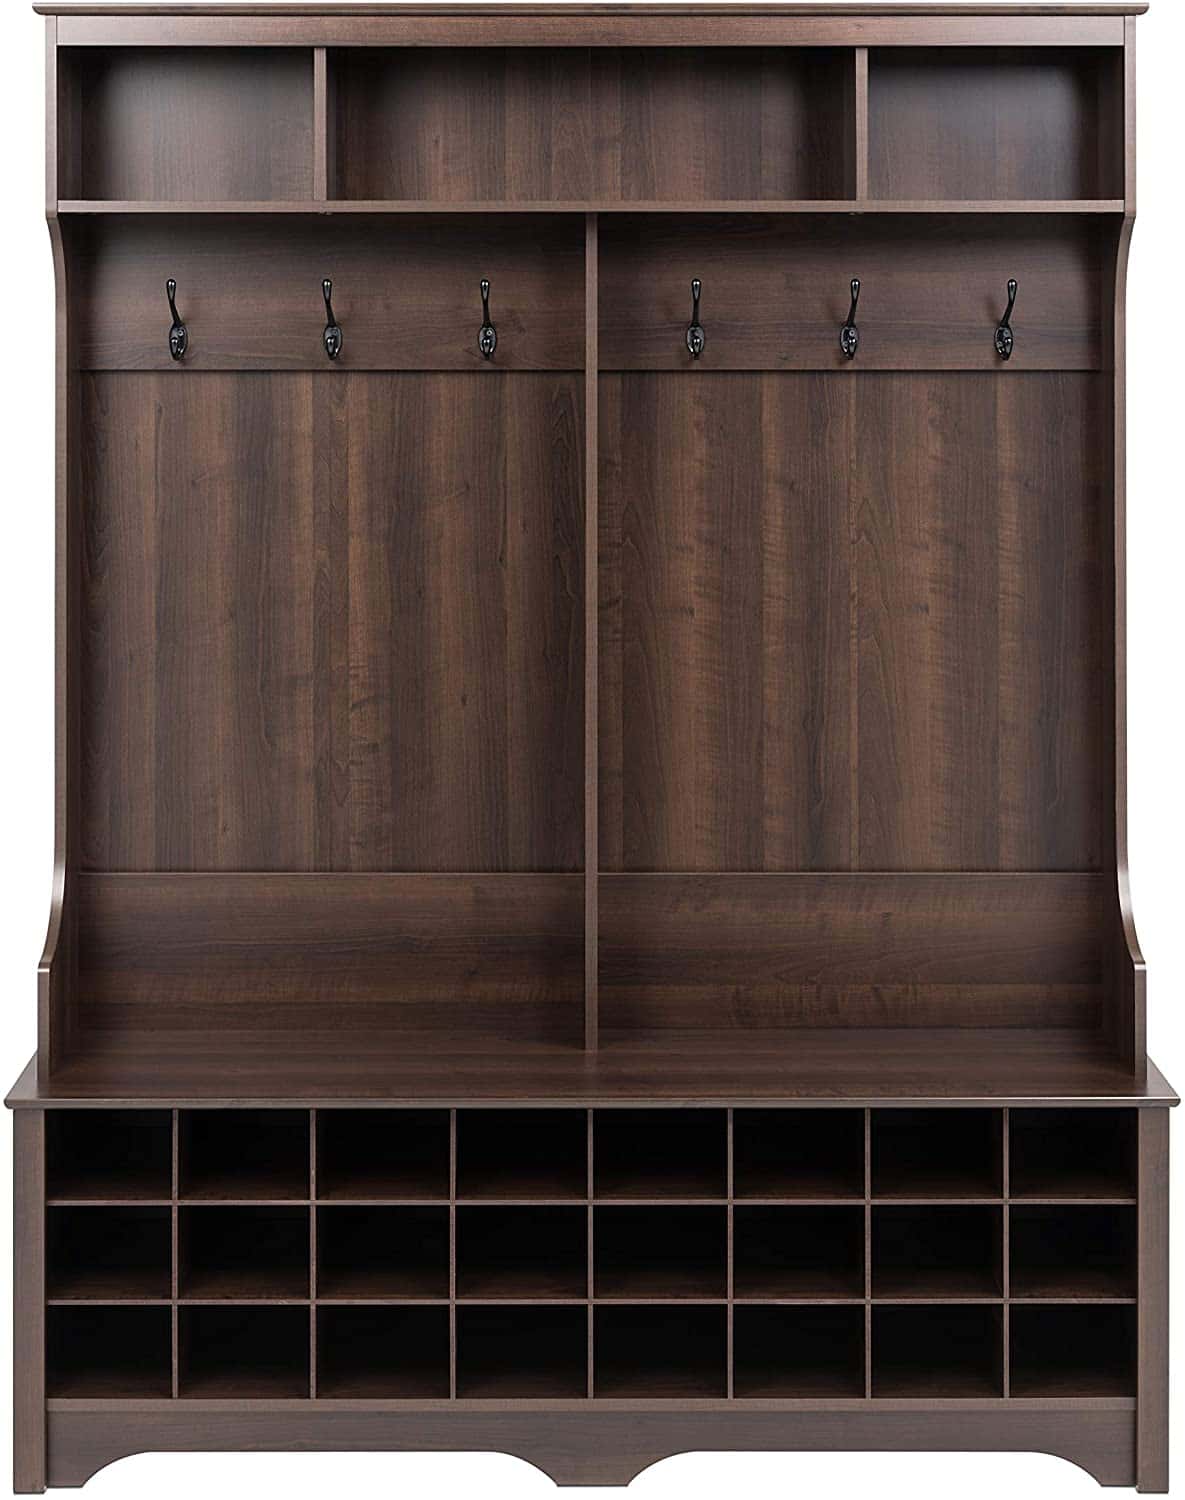 Prepac Espresso Tall Shoe Cubbie Cabinet